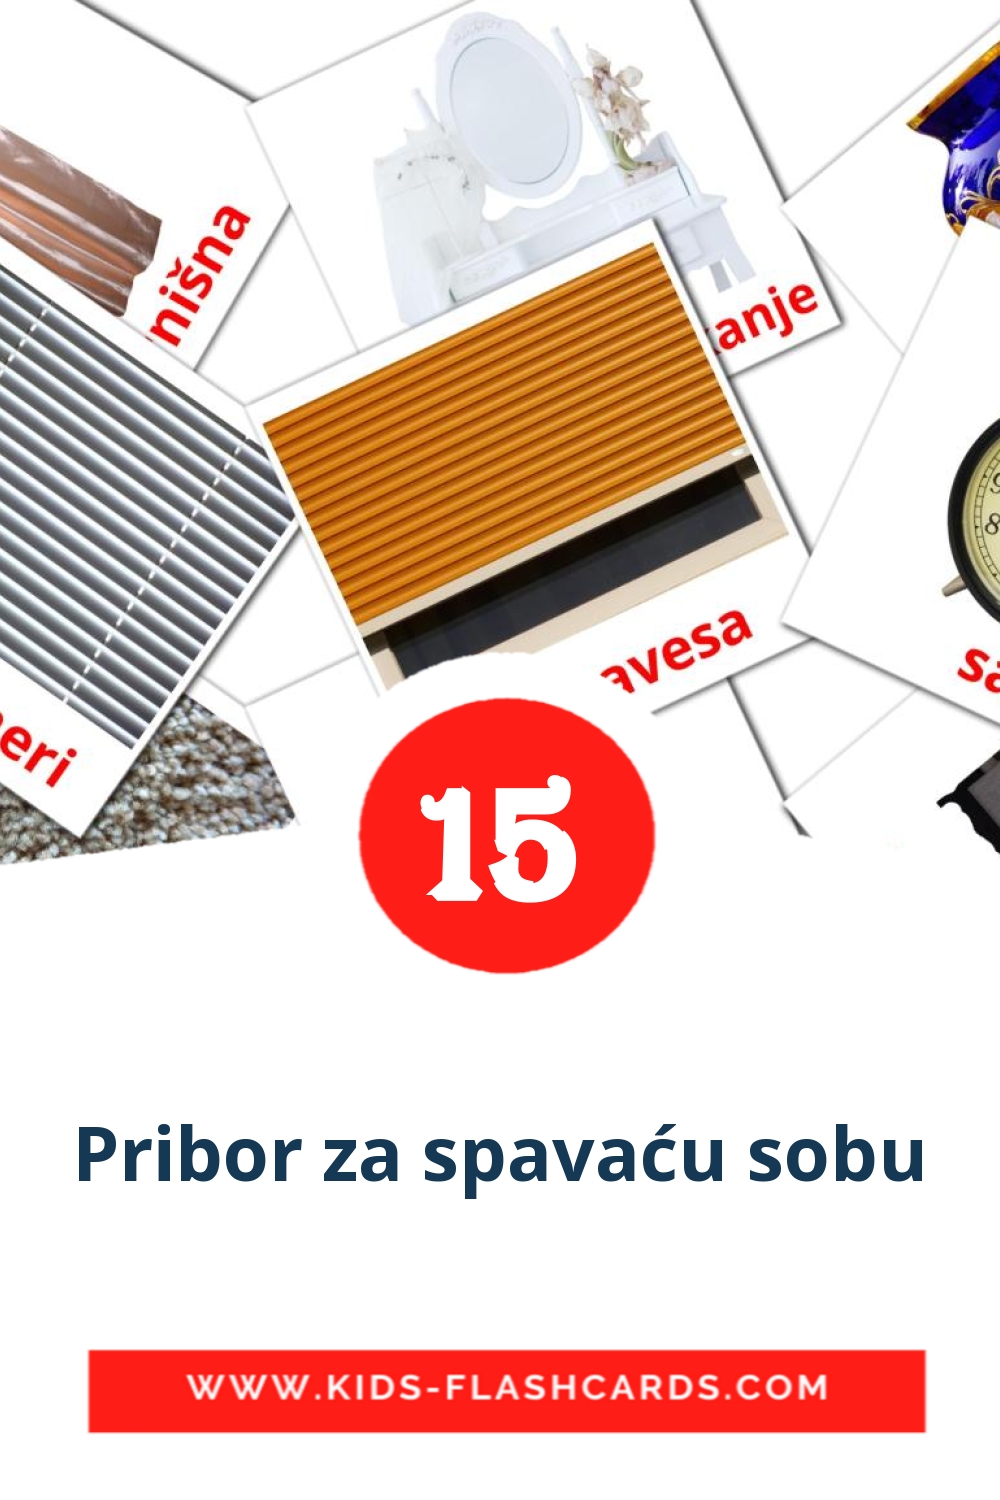 15 Pribor za spavaću sobu Picture Cards for Kindergarden in serbian